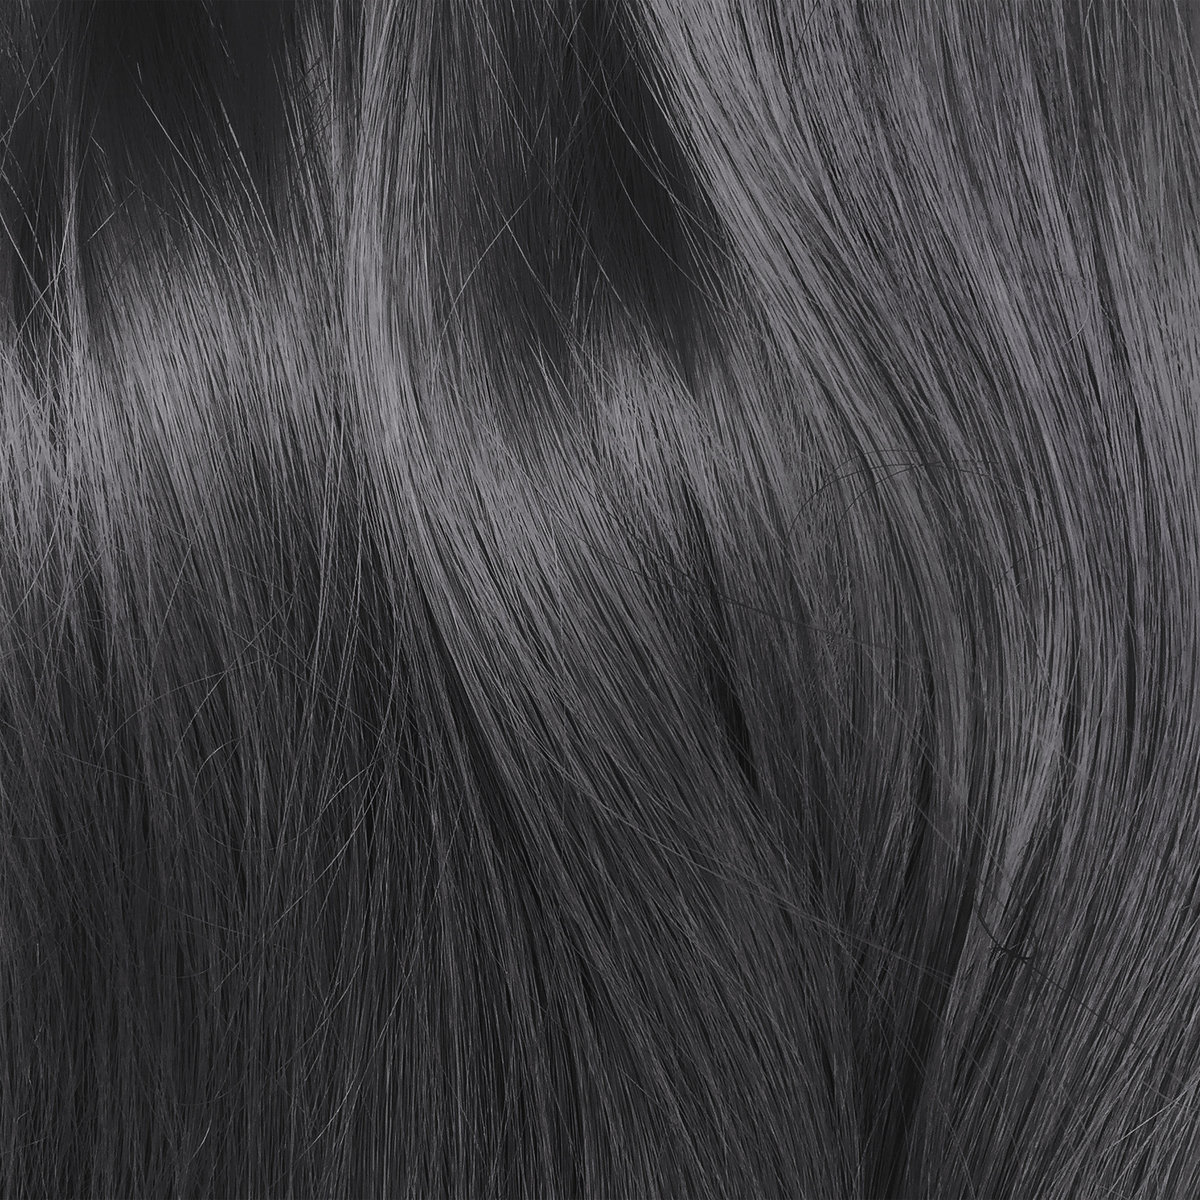 Chiêm ngưỡng 18 kiểu tóc nhuộm màu đen khói HOT trend 2022